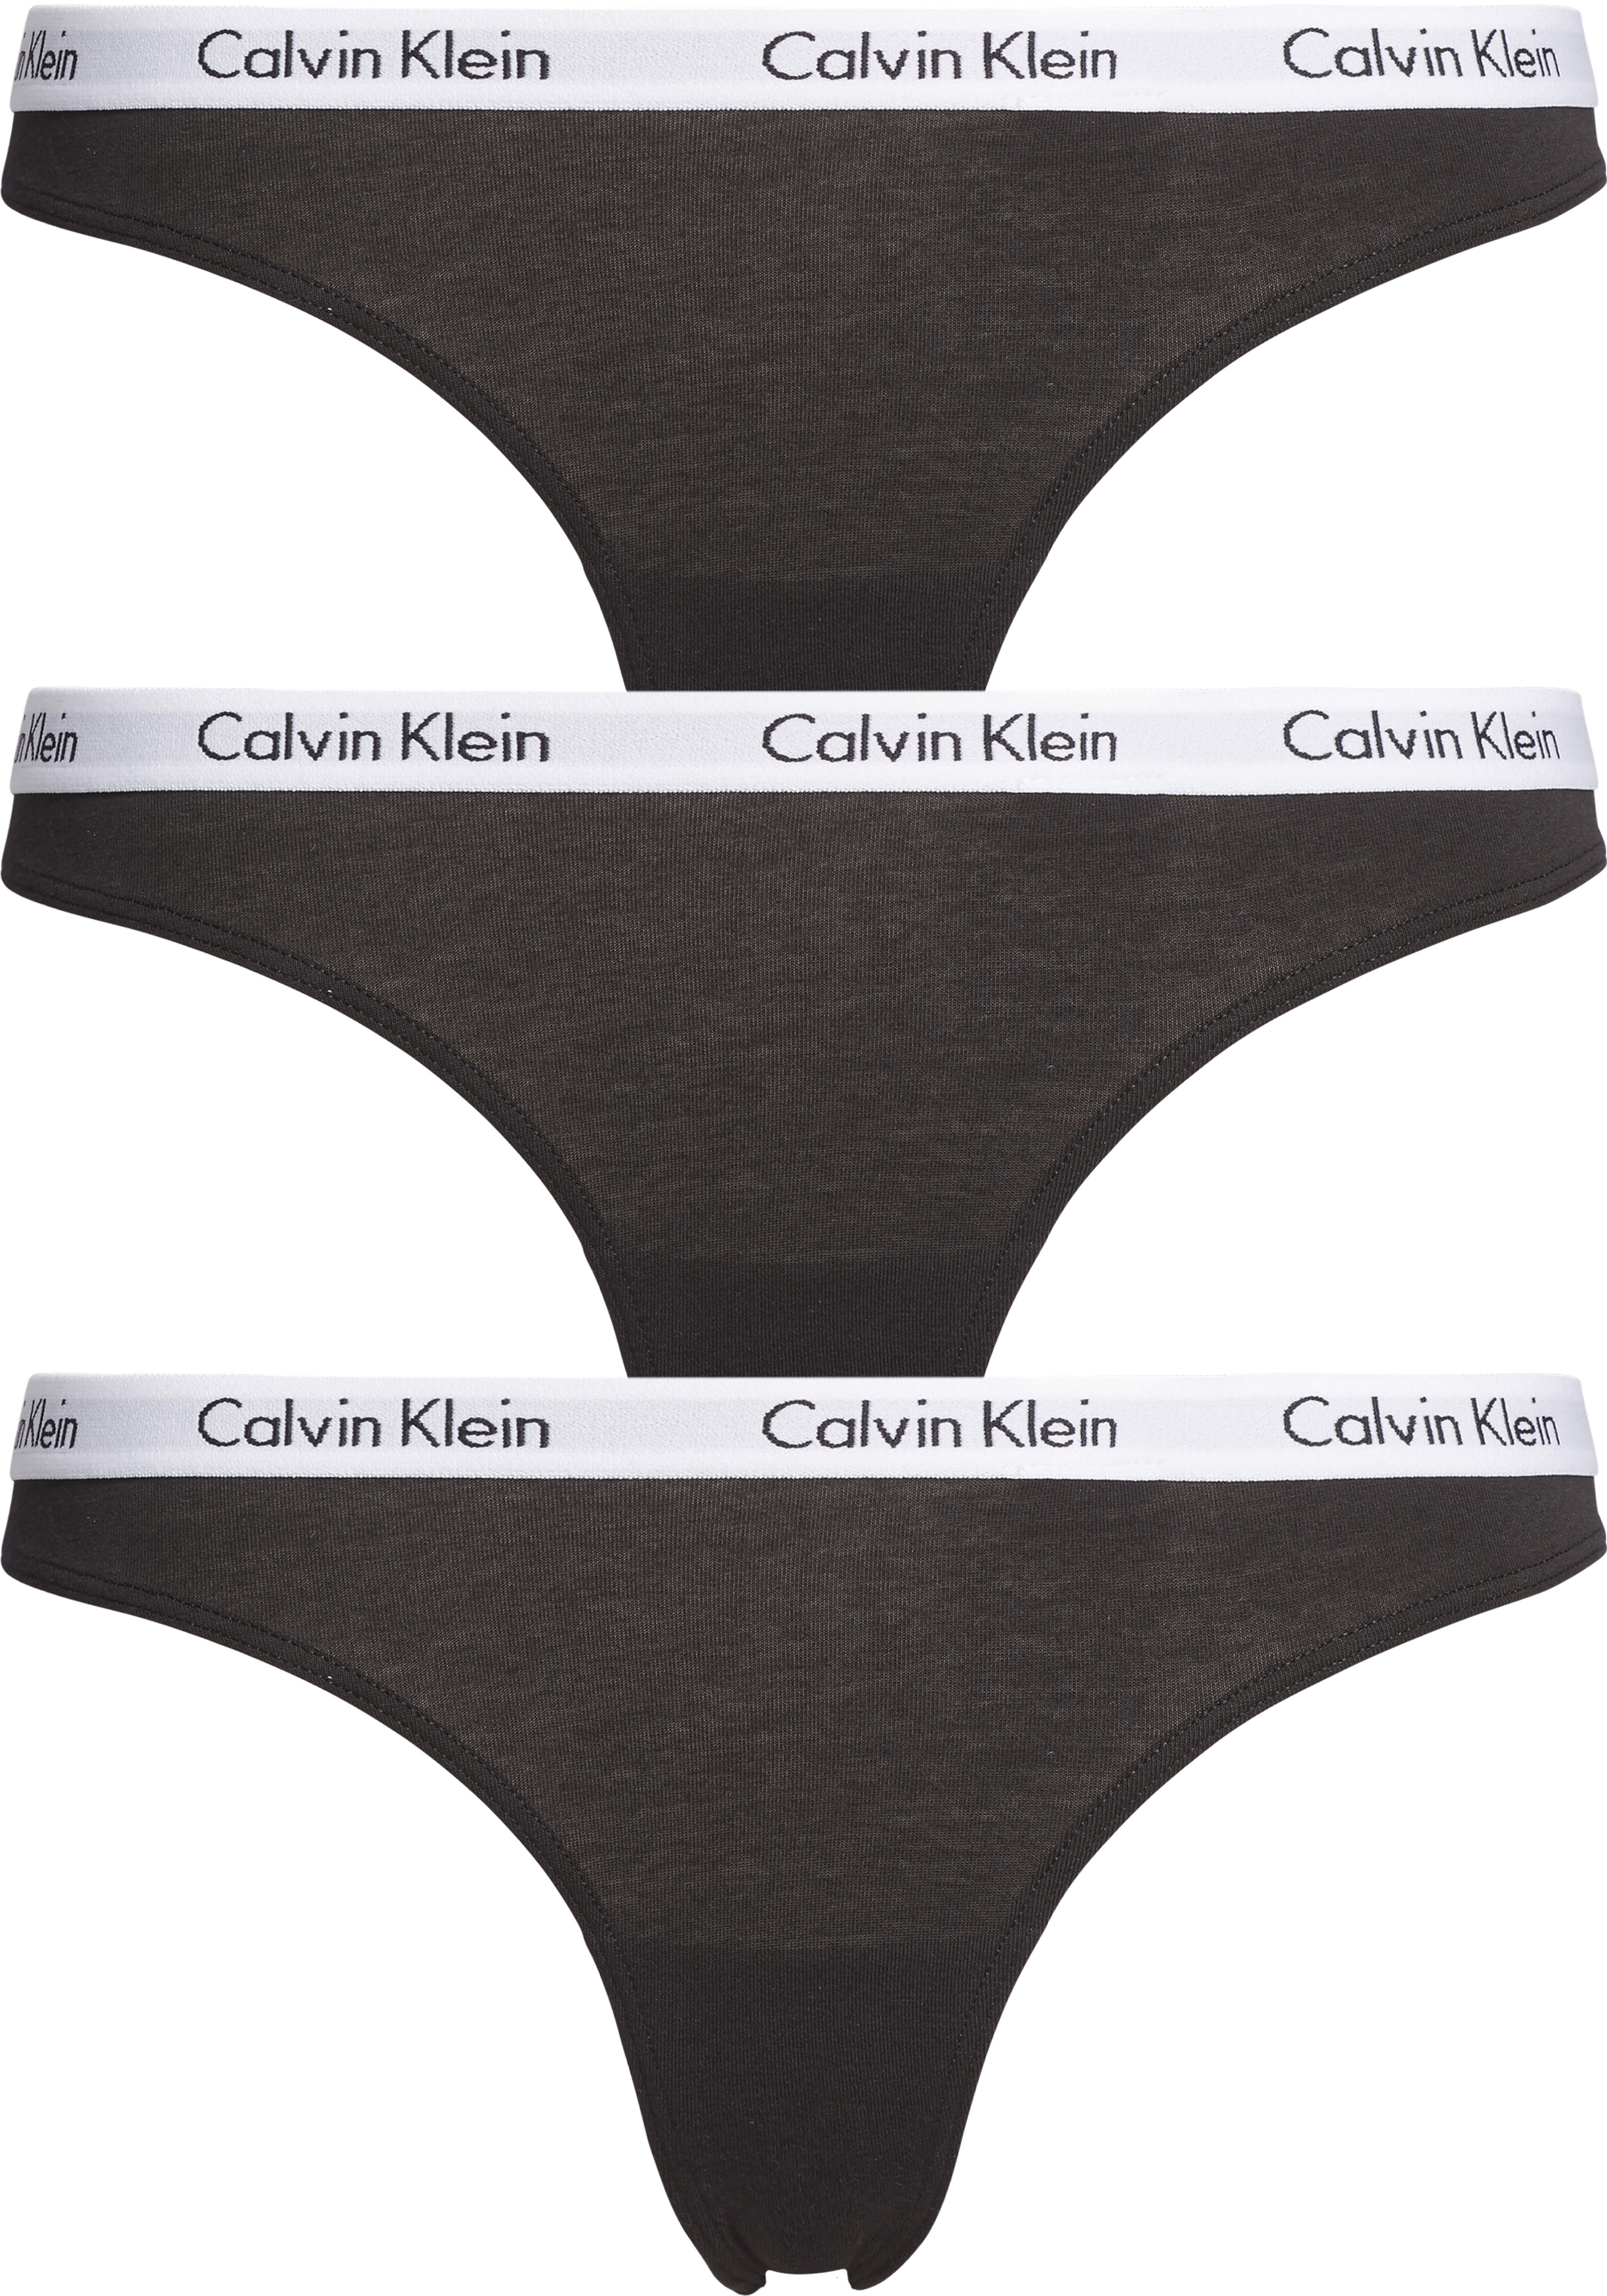 Intact kans dronken Calvin Klein dames strings (3-pack), zwart - Shop de nieuwste voorjaarsmode